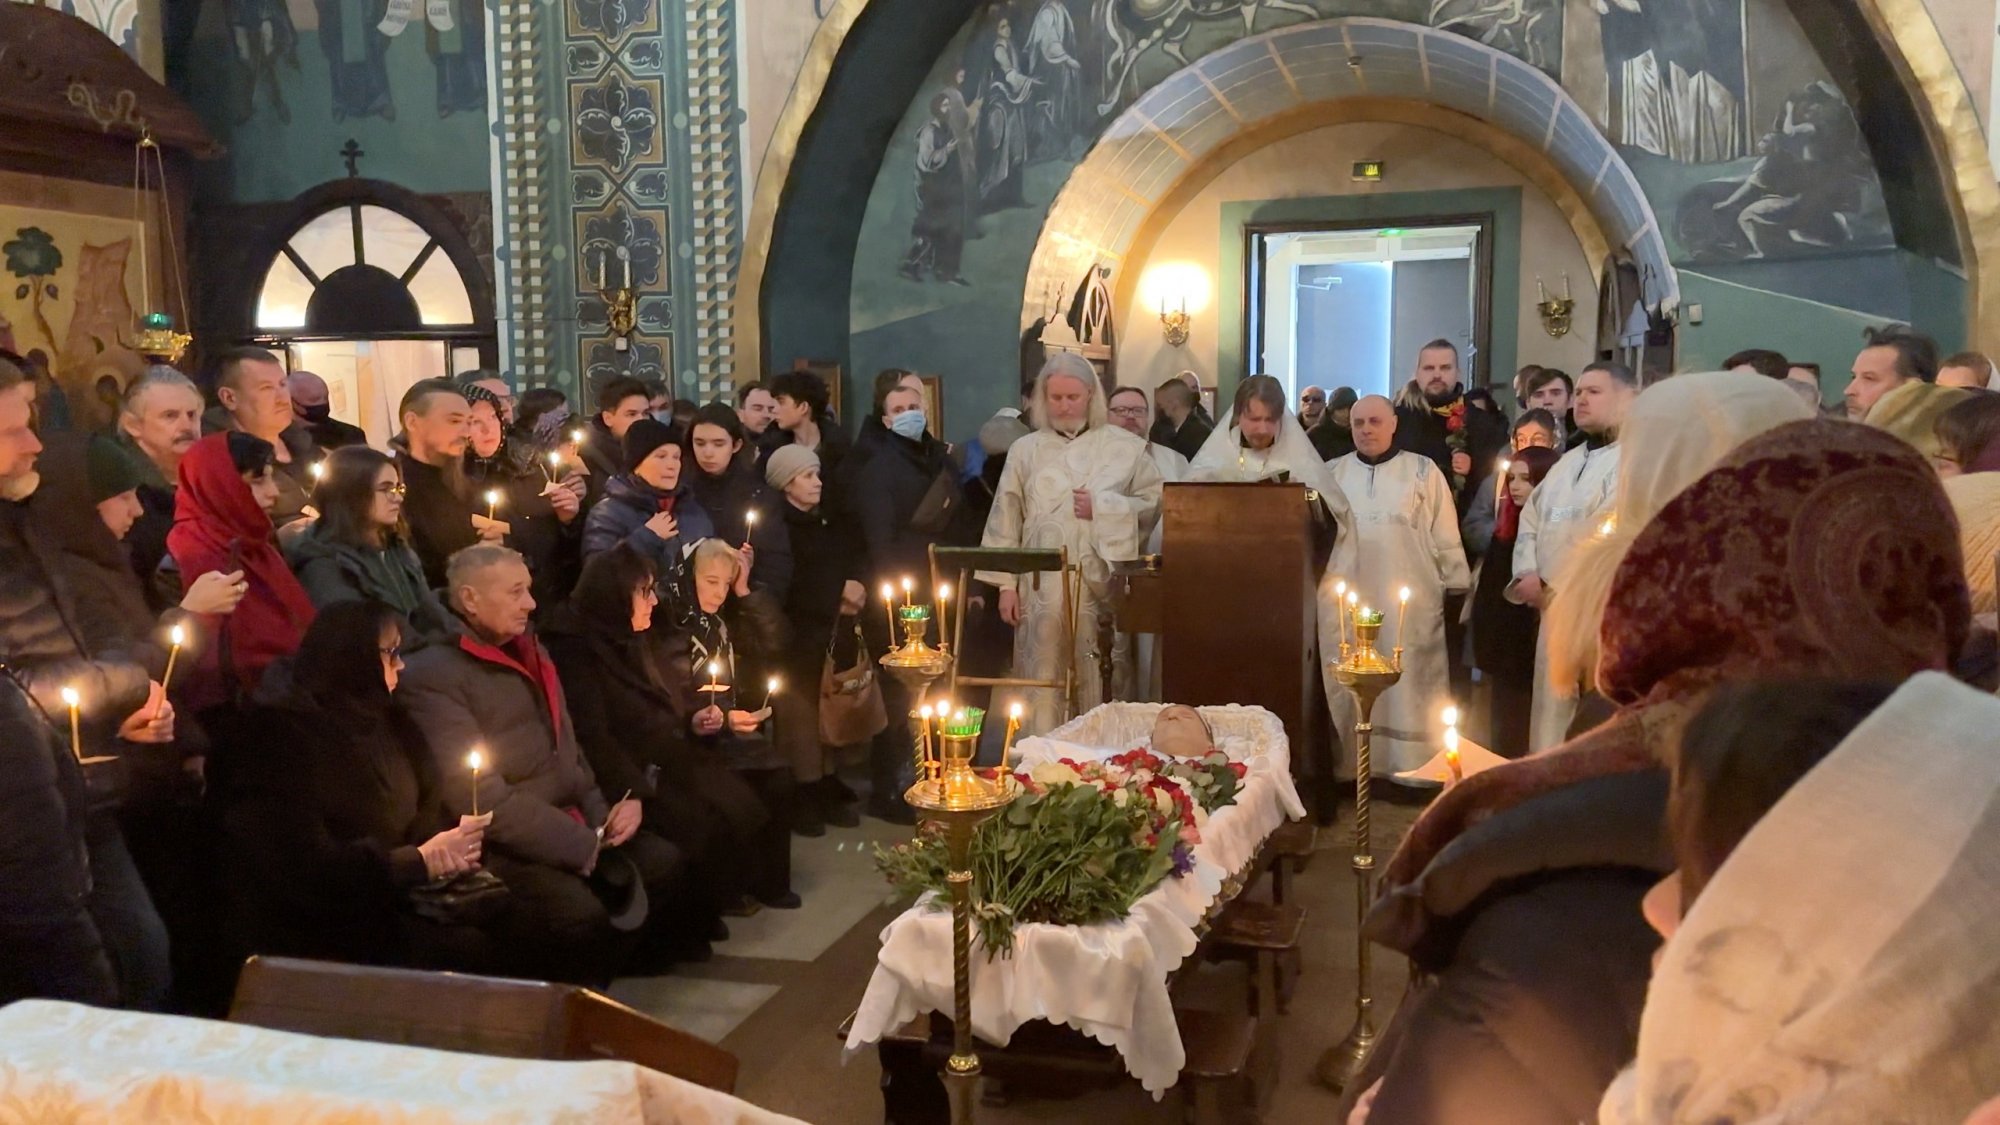 Αλεξέι Ναβάλνι: Χιλιάδες υποστηρικτές του συγκεντρώθηκαν στην εκκλησία για την κηδεία του